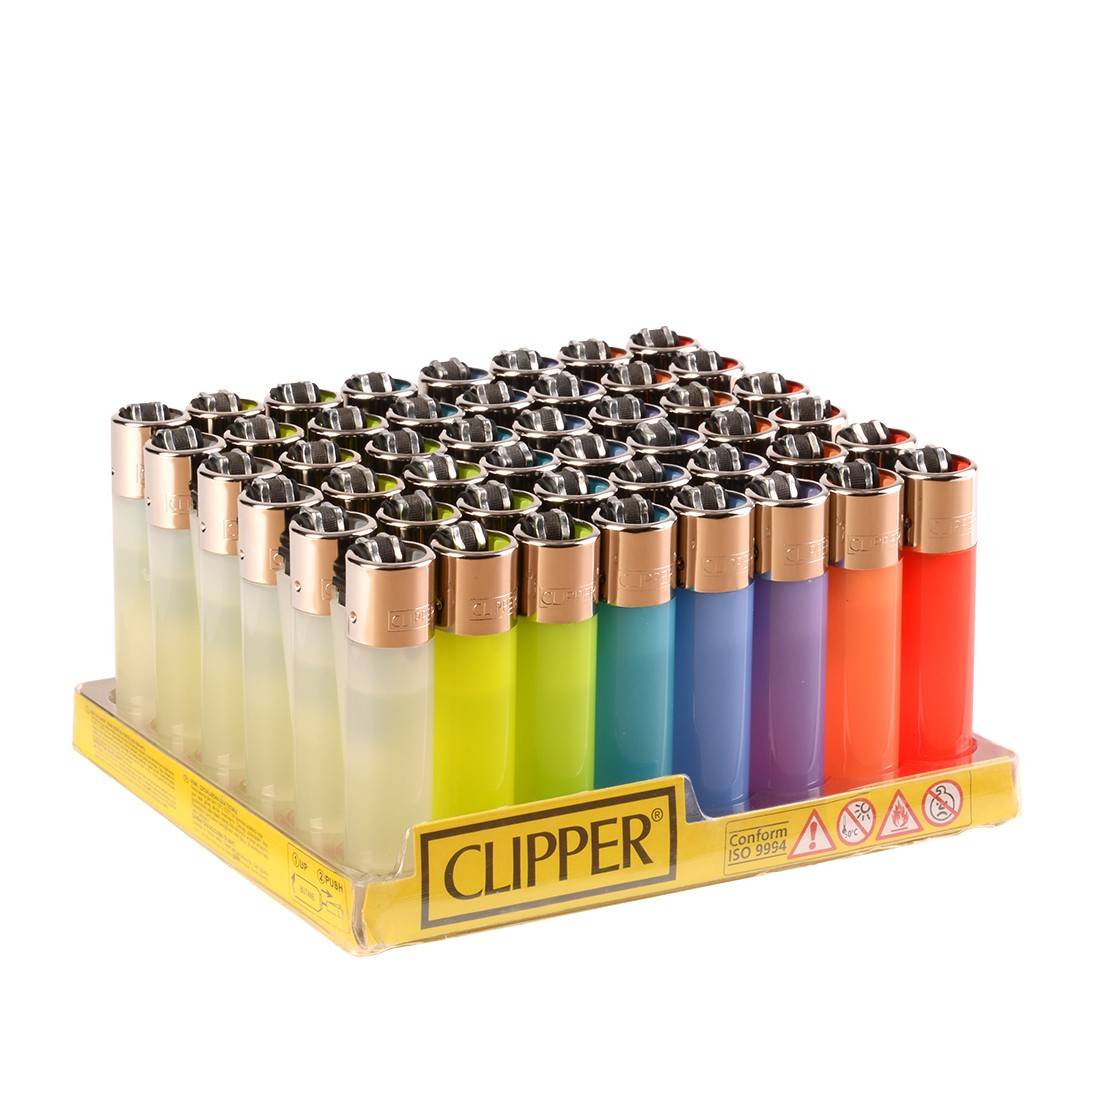 Clipper - Briquets métal rechargeables à pierre - Rainbow Gelato